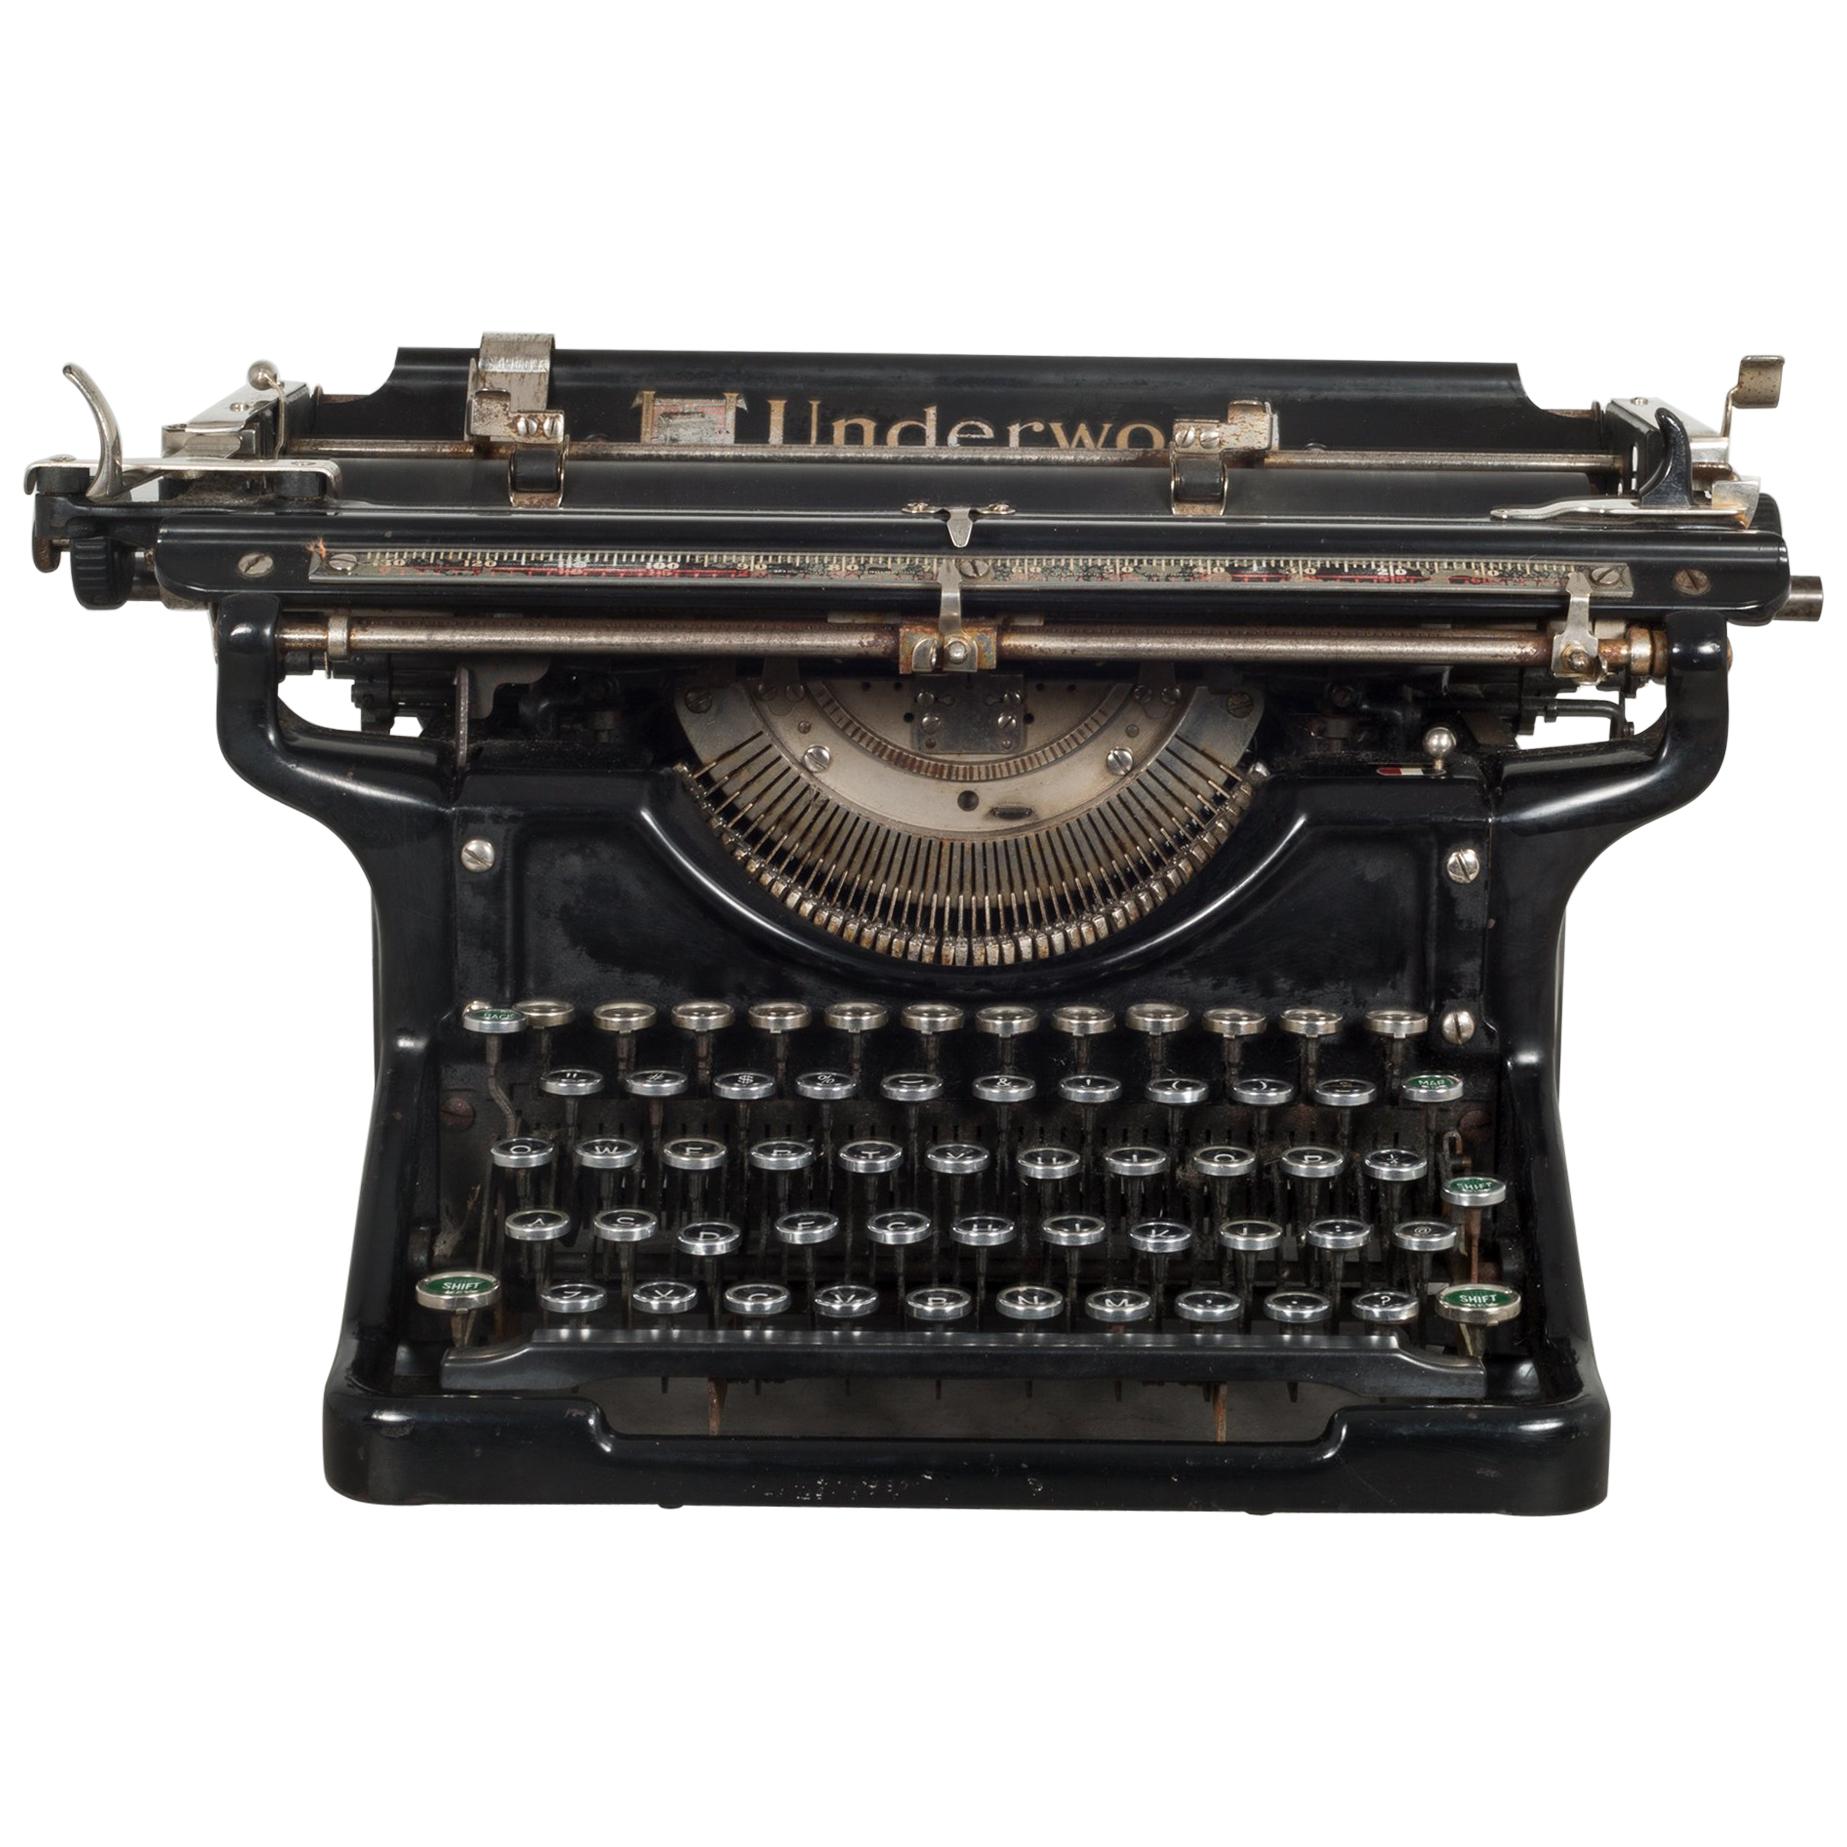 Antique Underwood Typewriter #6 12, circa 1933